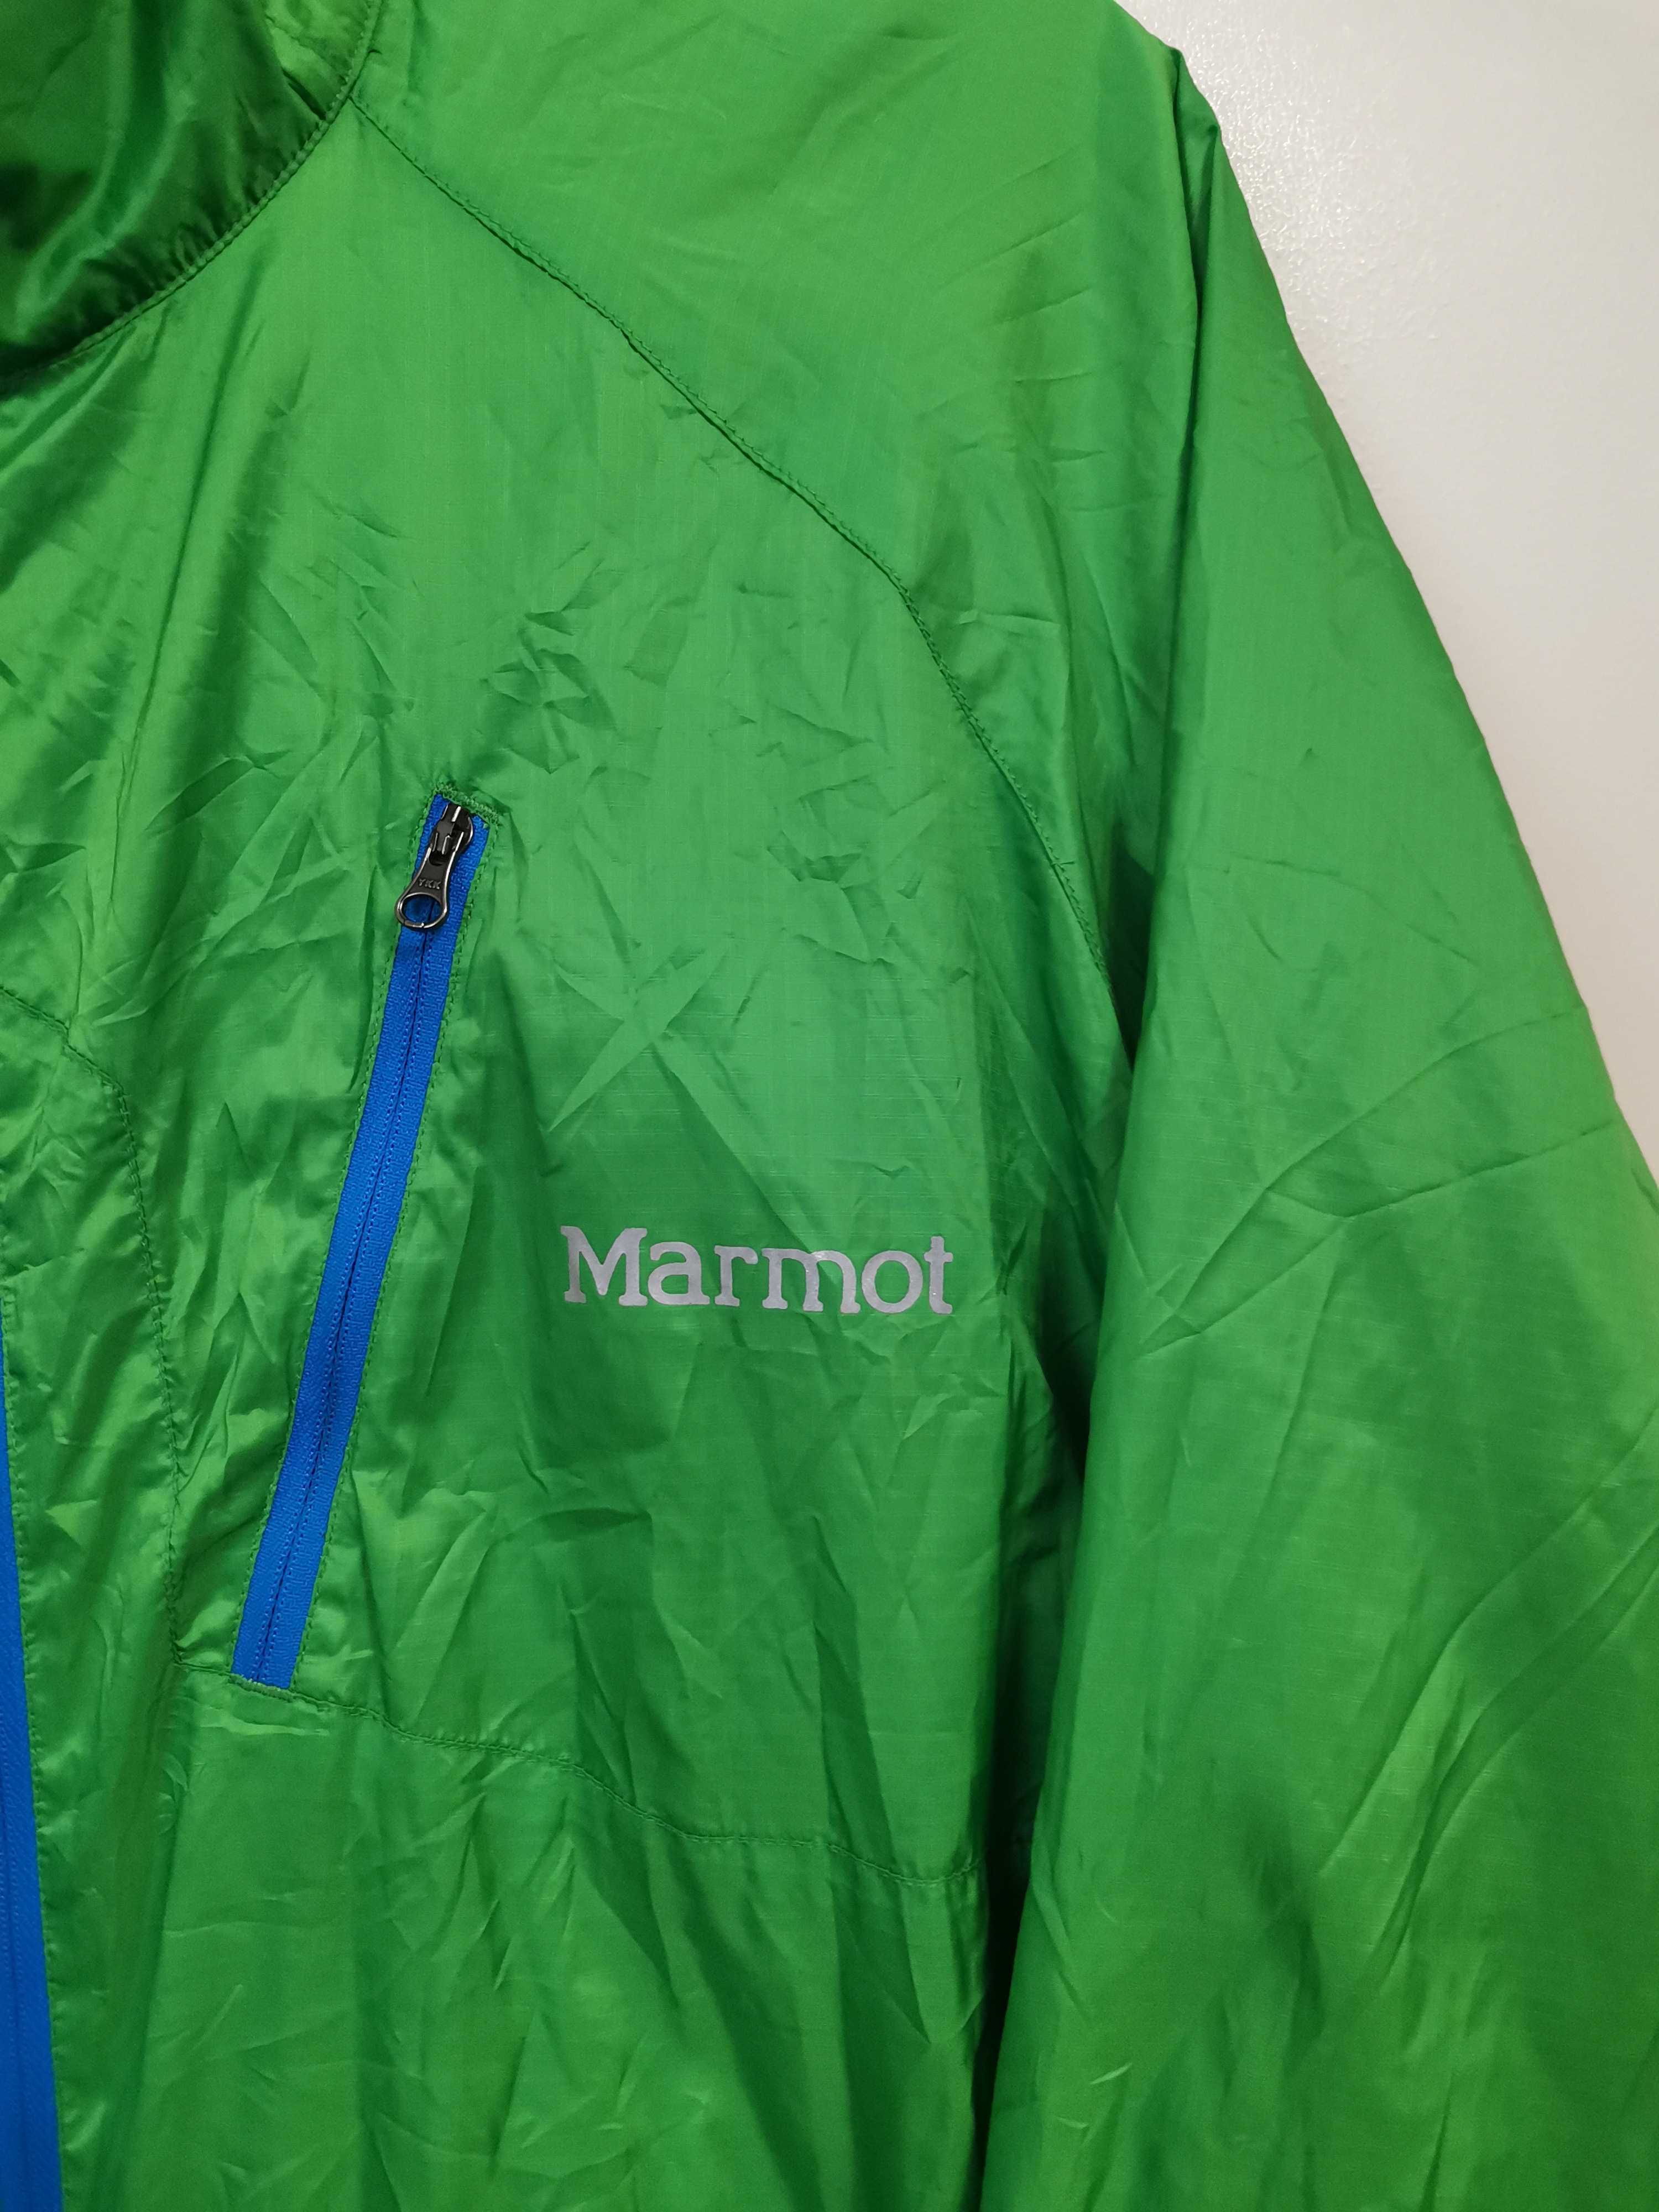 Marmot Windbreaker Men’s Jacket.